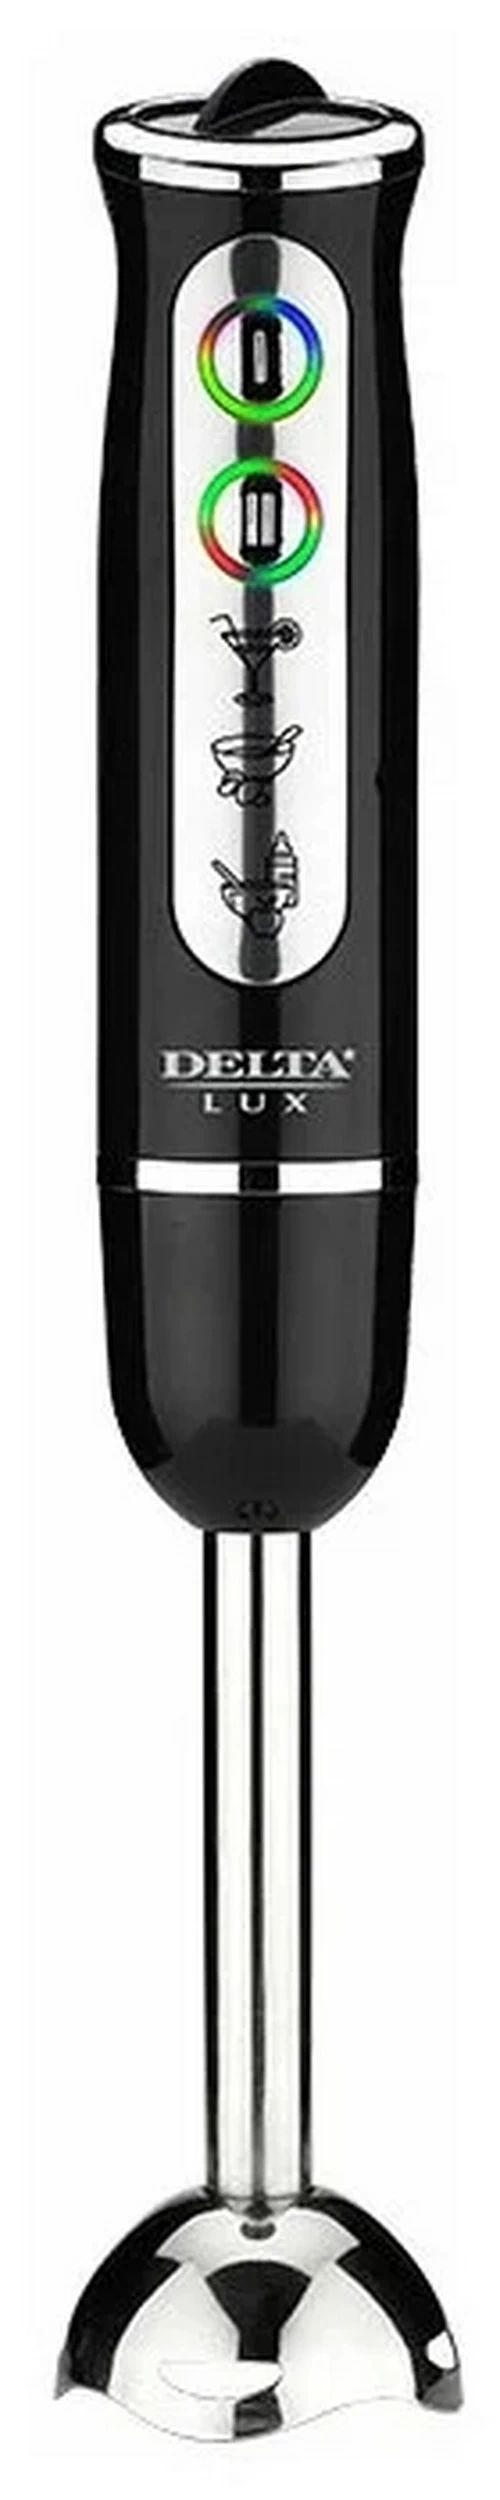 Погружной блендер Delta Lux DL-7039 черный погружной блендер delta de 7006b